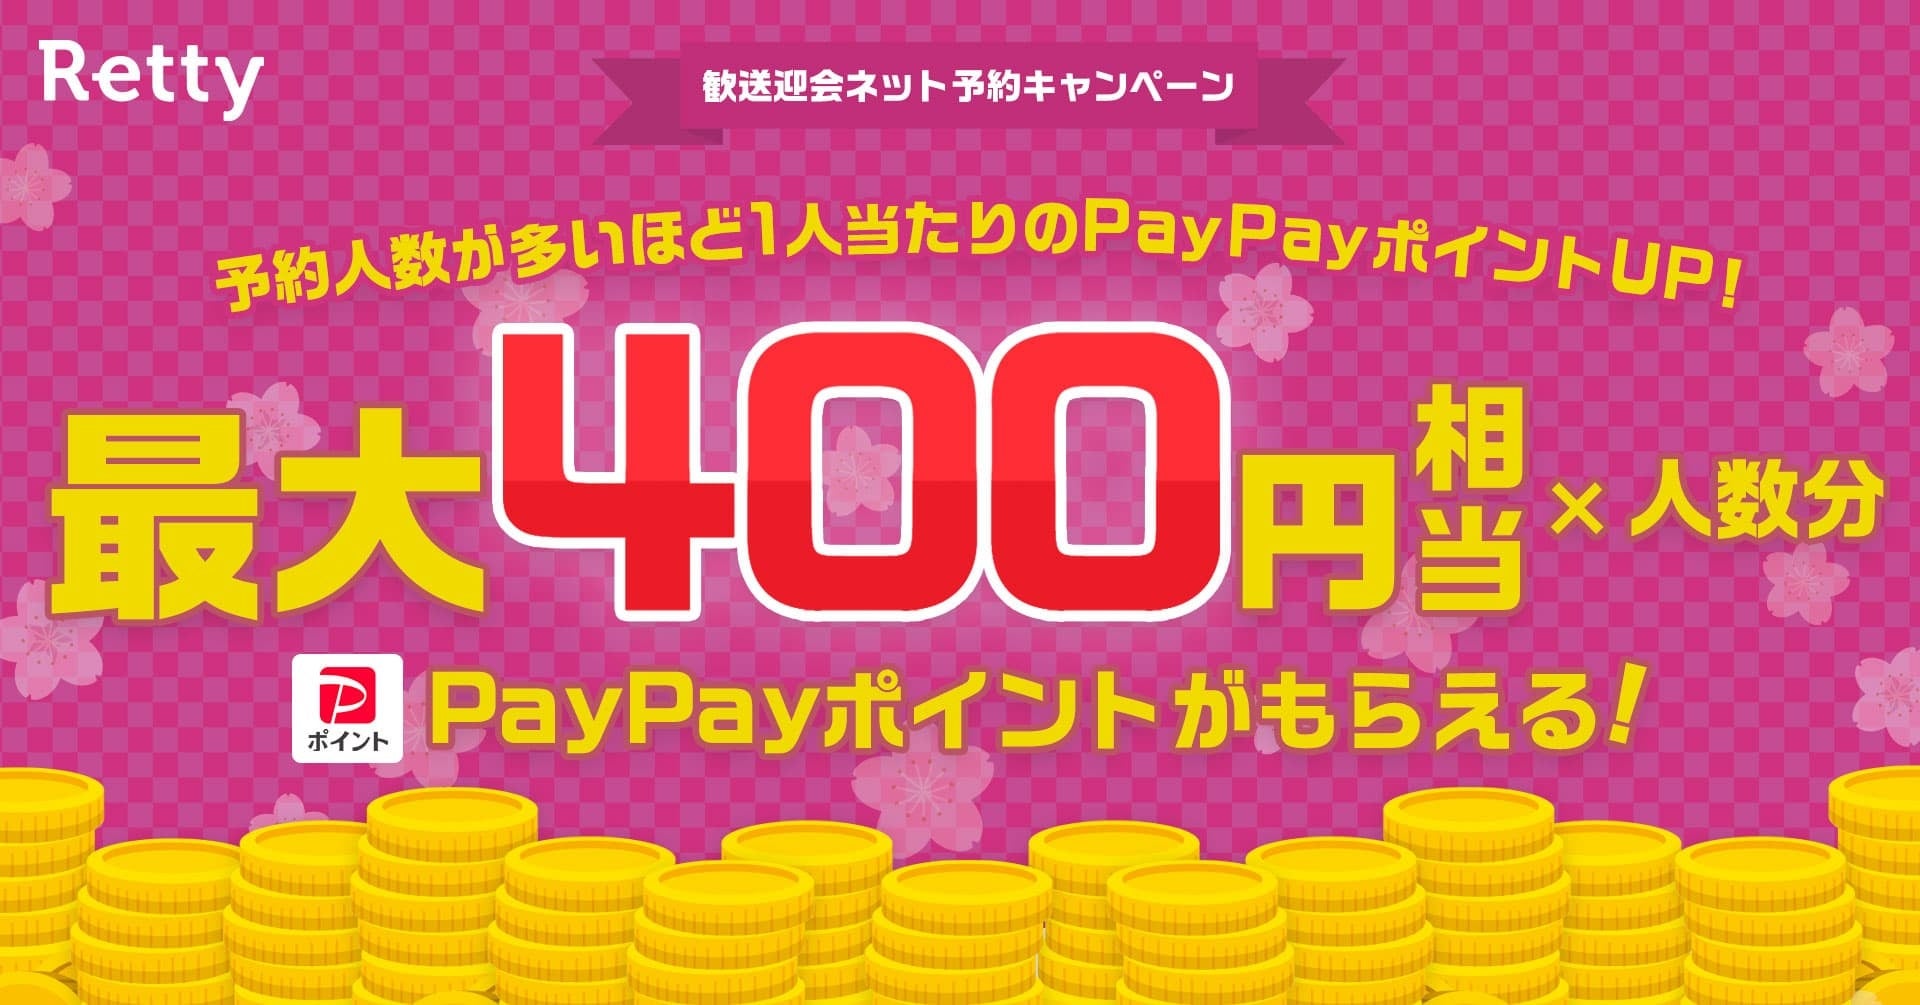 Rettyでネット予約すると予約人数×最大400円相当のPayPayポイントがもらえる！「歓送迎会PayPayポイントキャンペーン」を開始